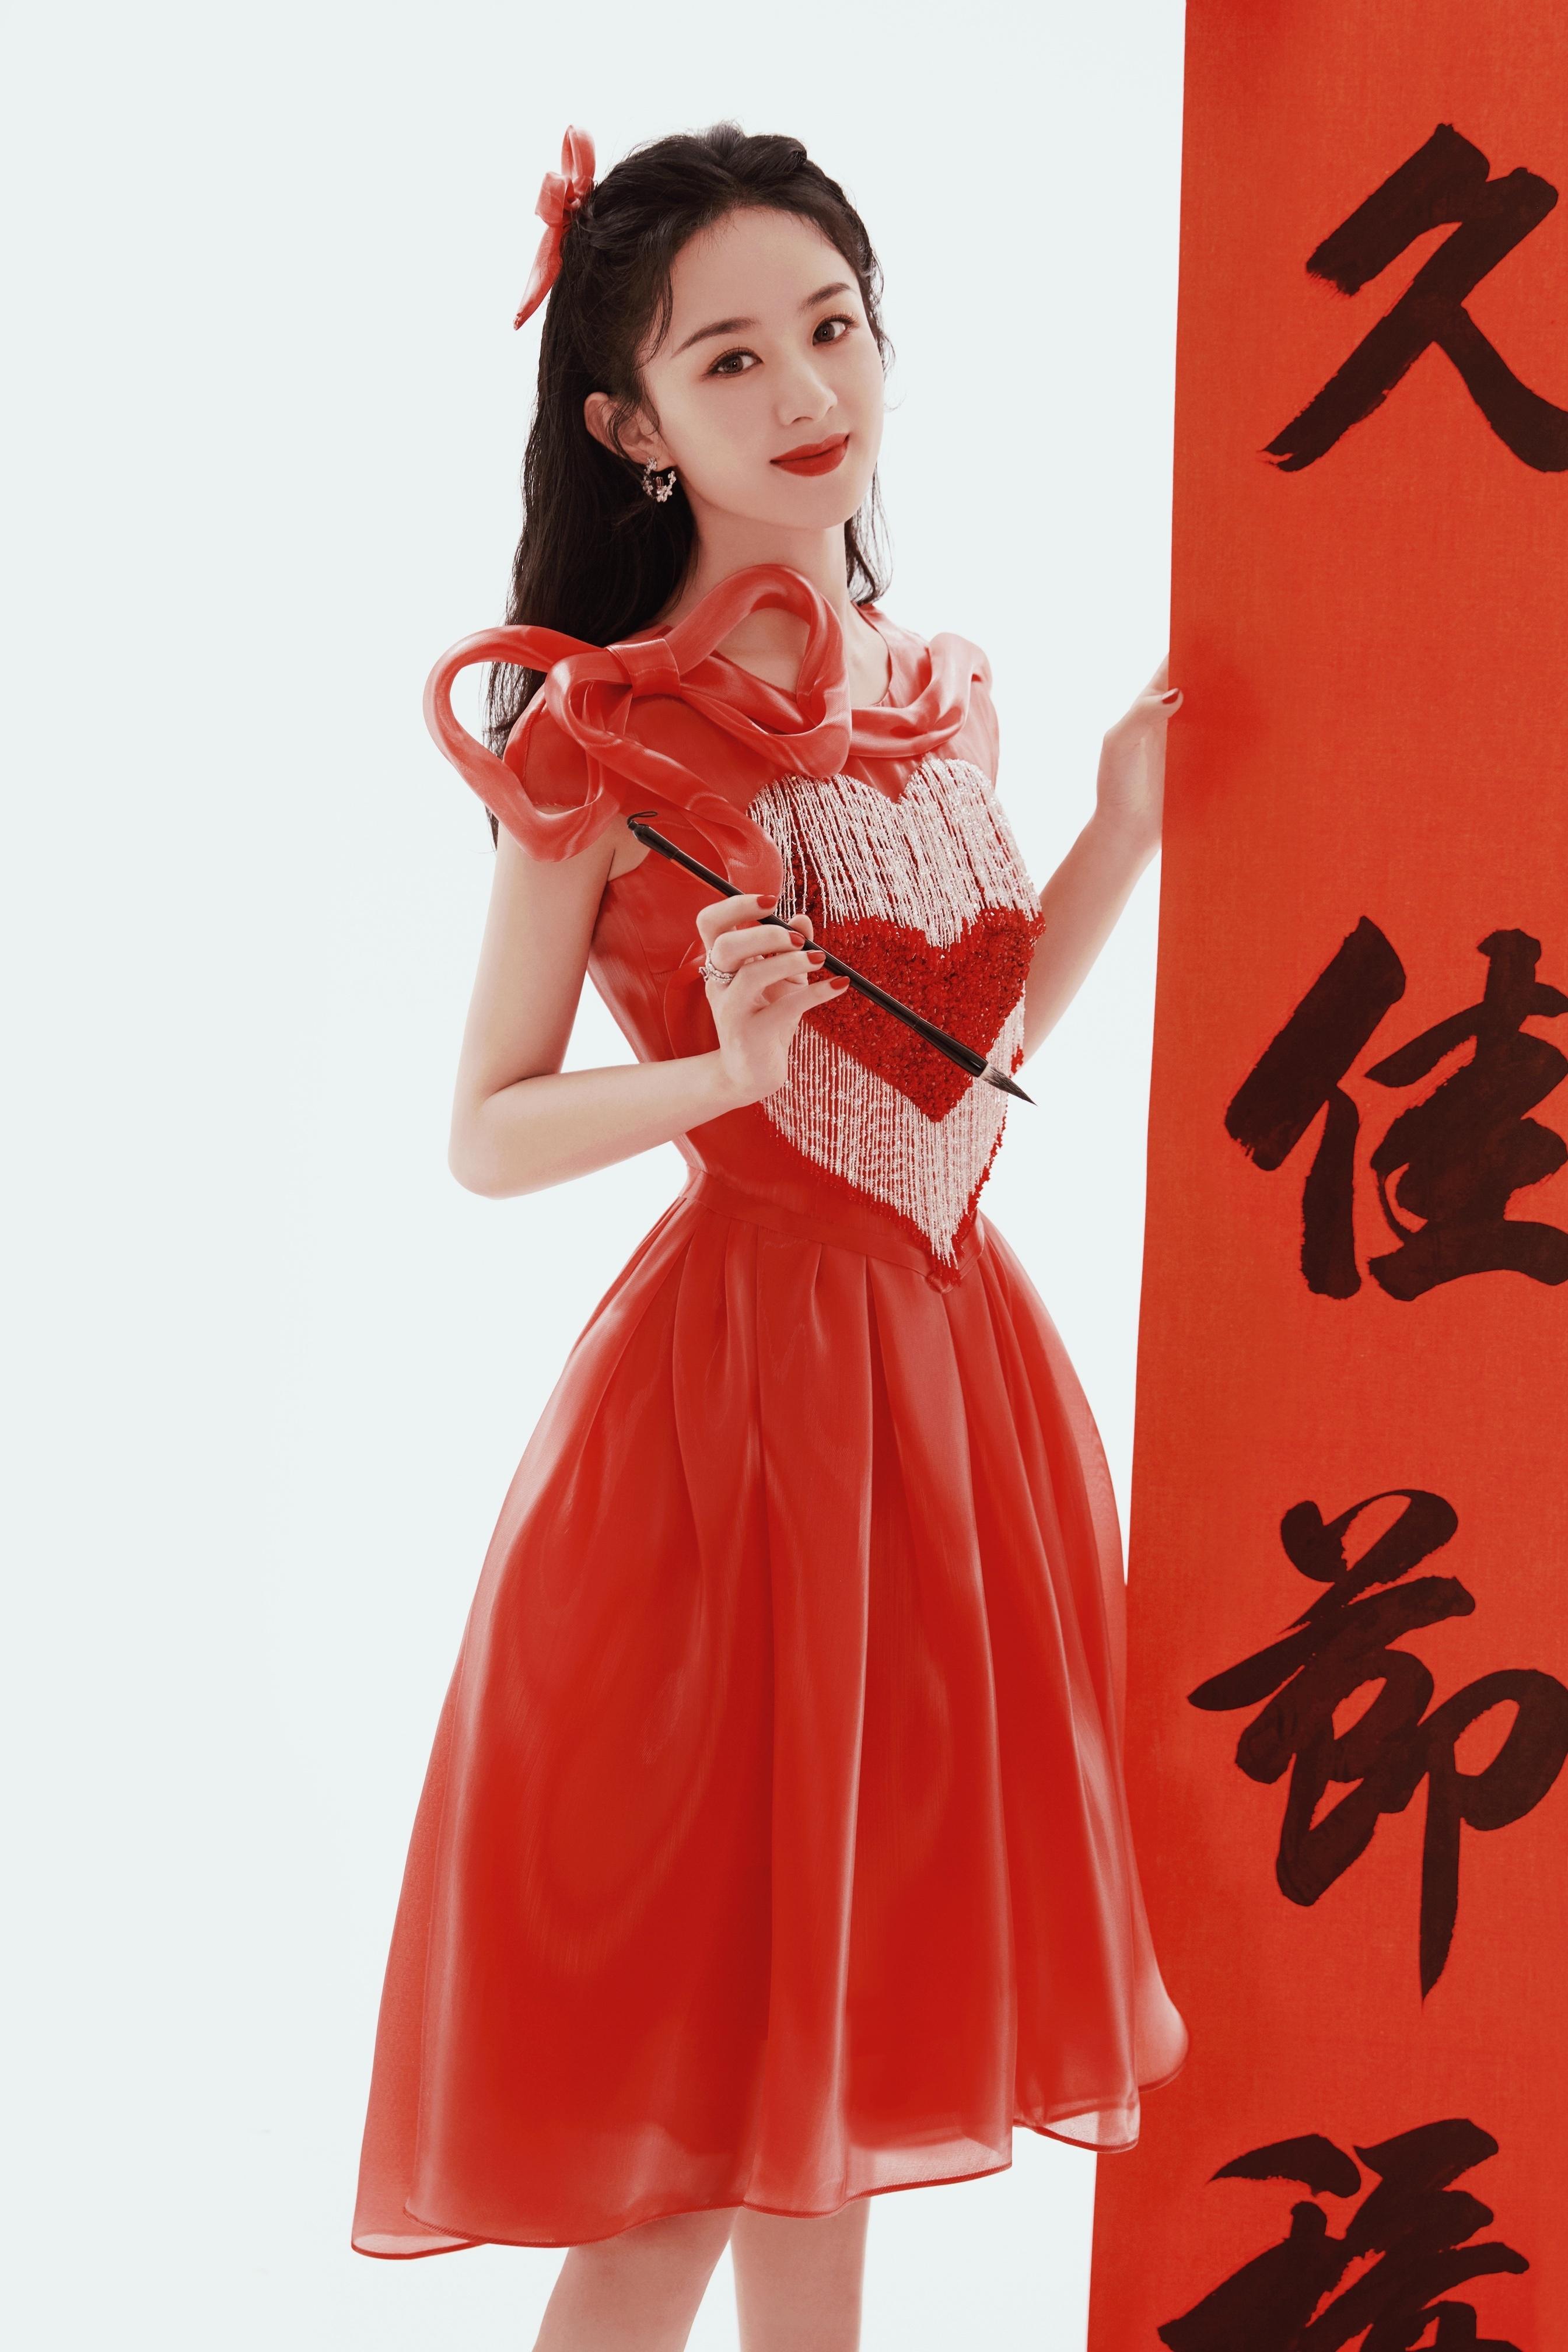 赵丽颖春晚舞台造型释出 着红色爱心纱裙元气满满,1